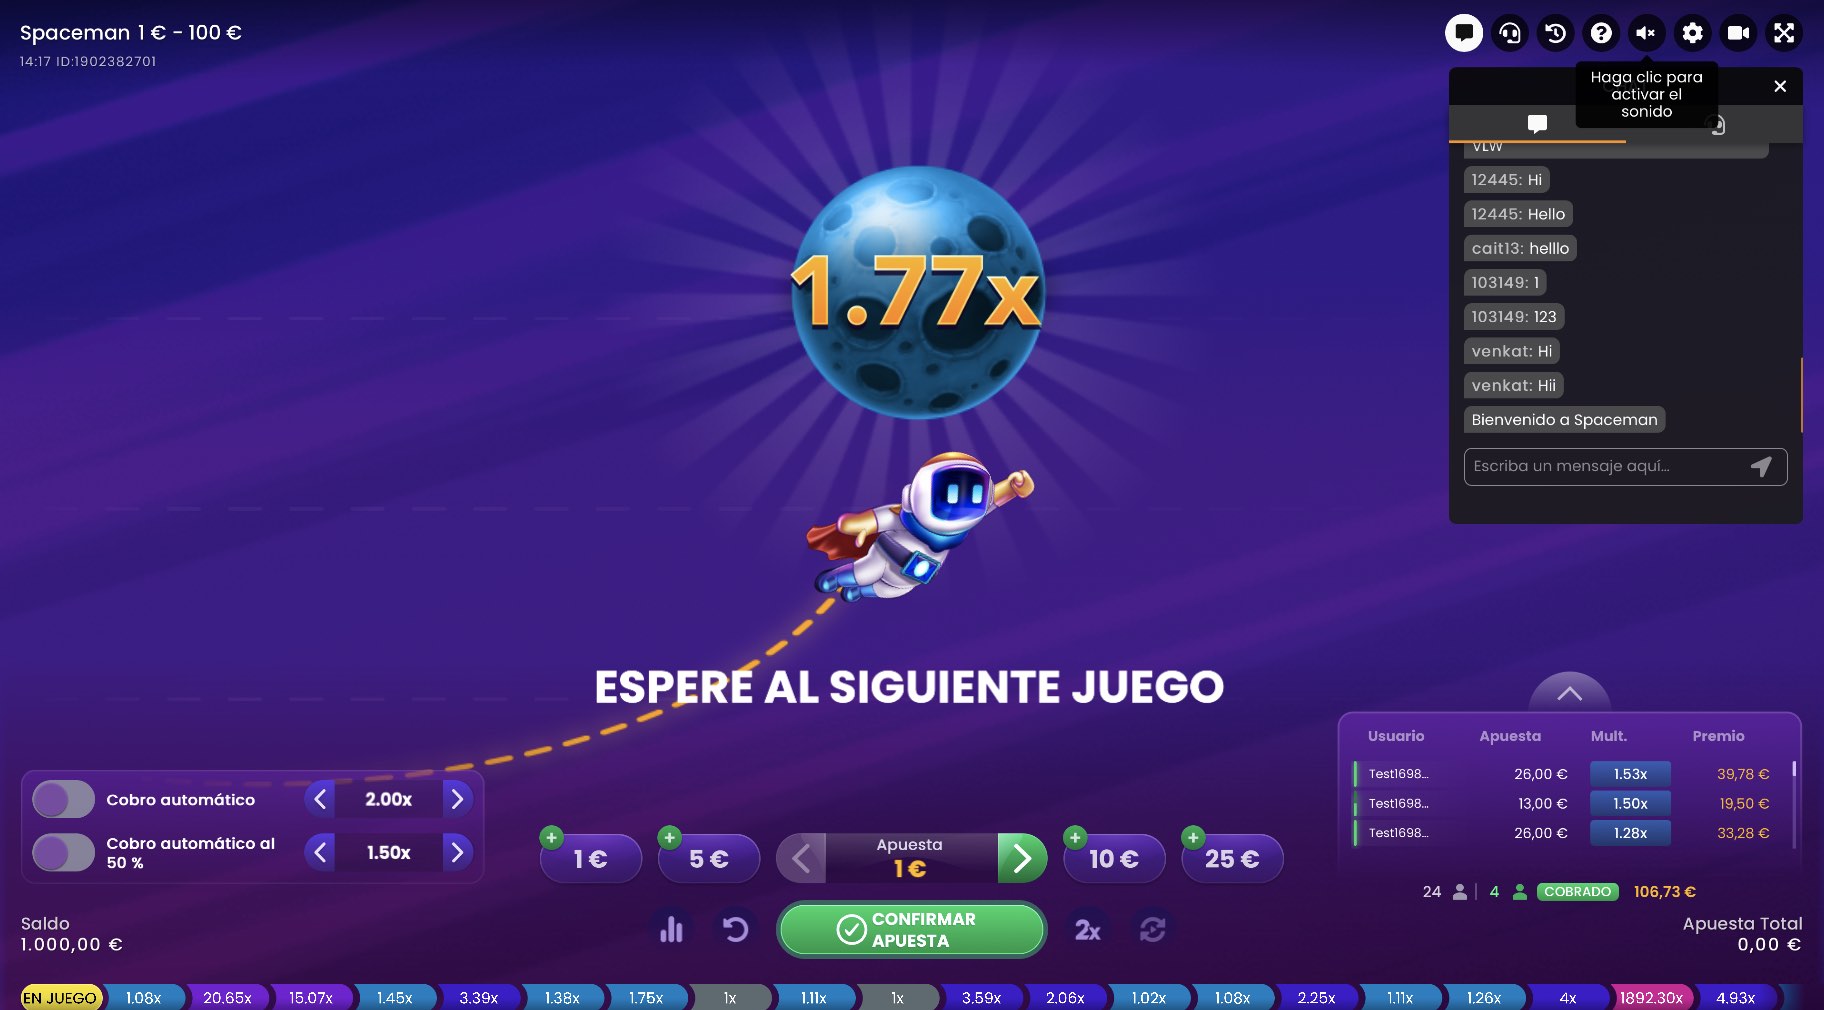 Cómo jugar Spaceman?: Guía y Mejores Casinos en Perú